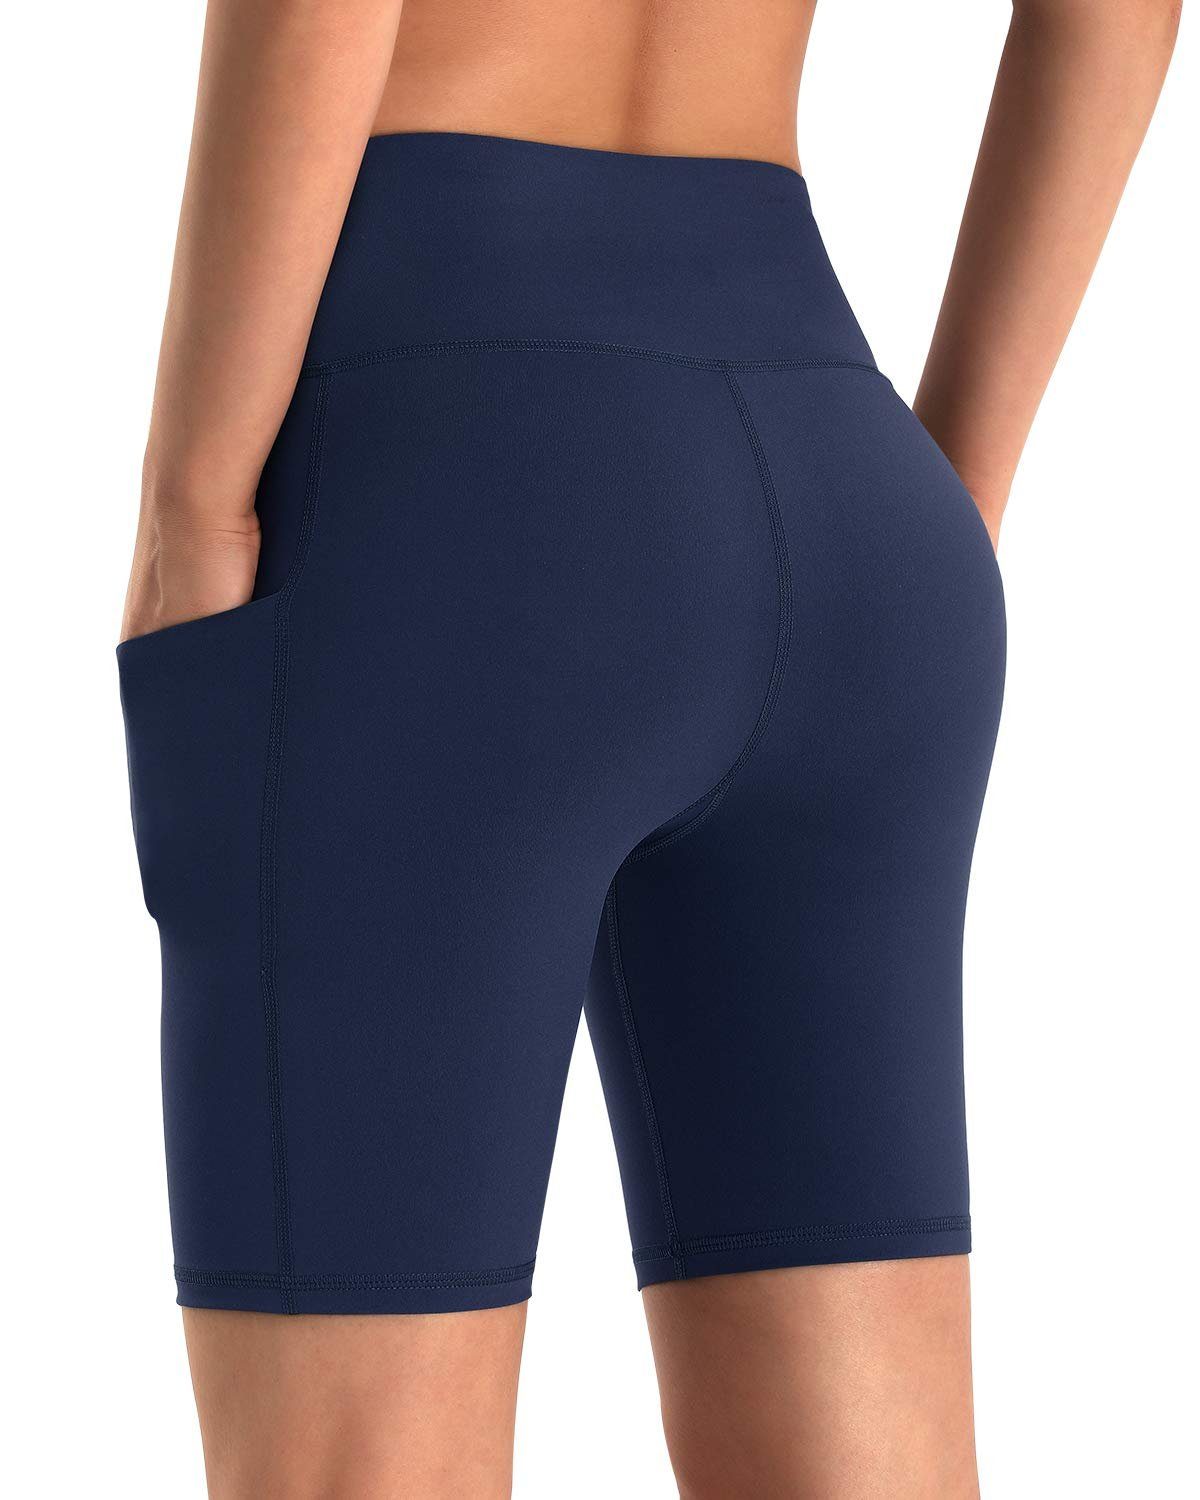 OTGFPM20A08 und hoher G4Free Taille Yogashorts Taschen Frauen mit für Blau Yoga-Shorts